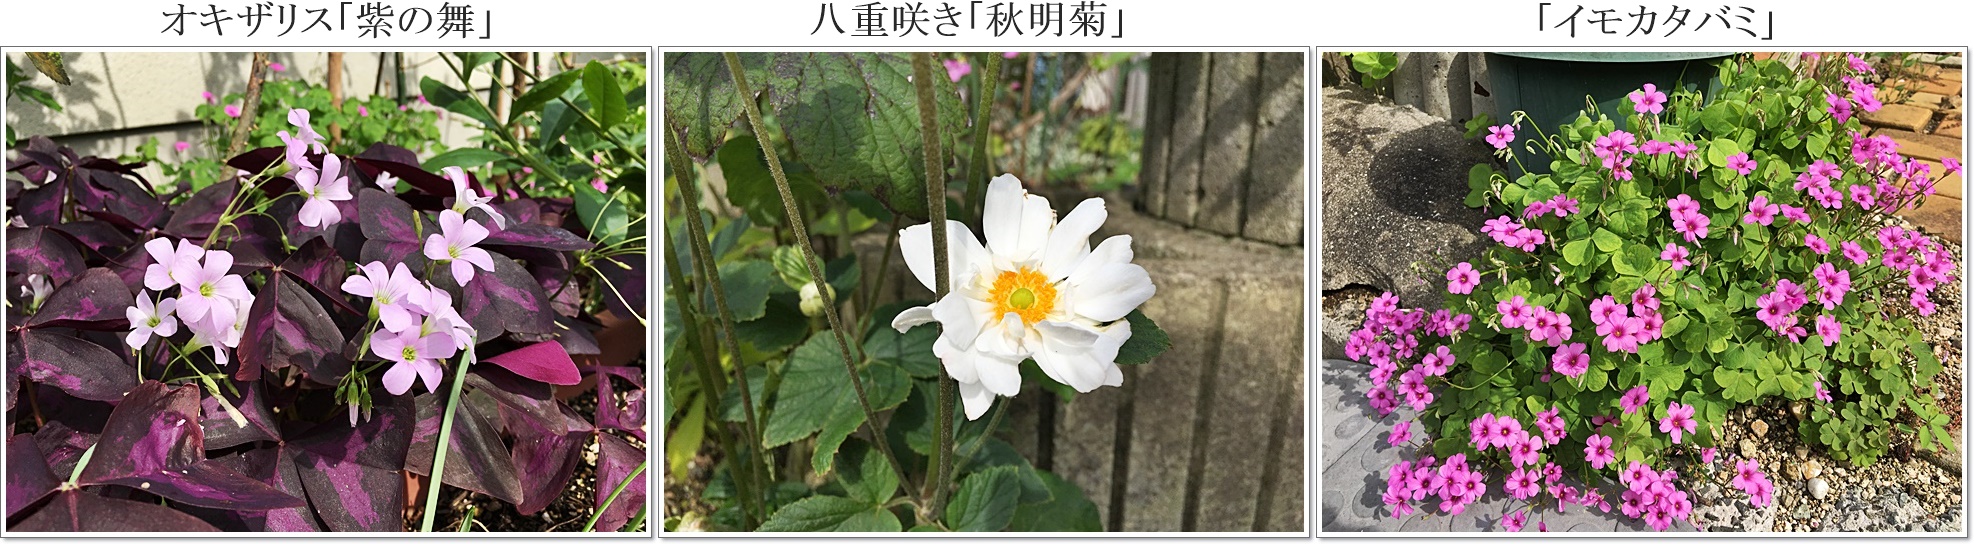 八重咲く秋明菊イモカタバミ、紫の舞3枚cats.jpg